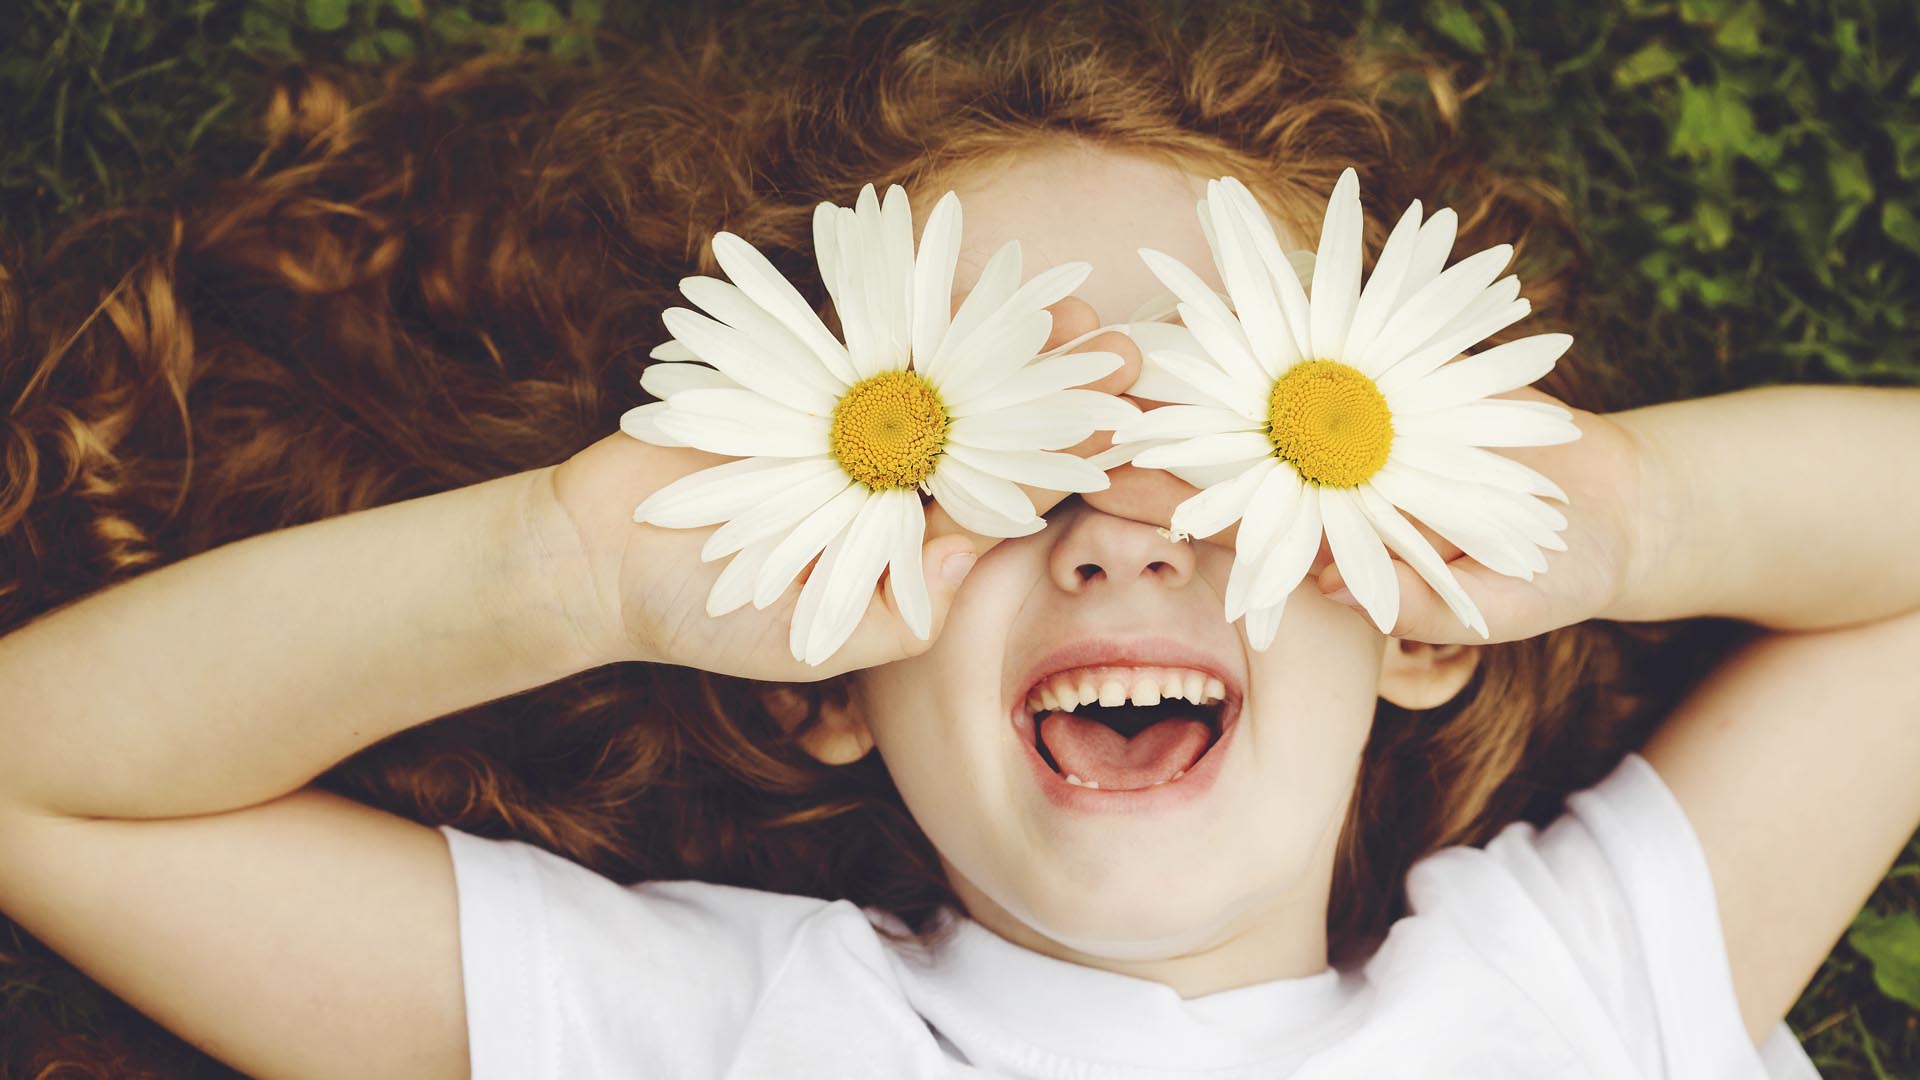 Esta científicamente comprobado que sonreír frecuentemente te hará vivir mejor, más alegre y feliz